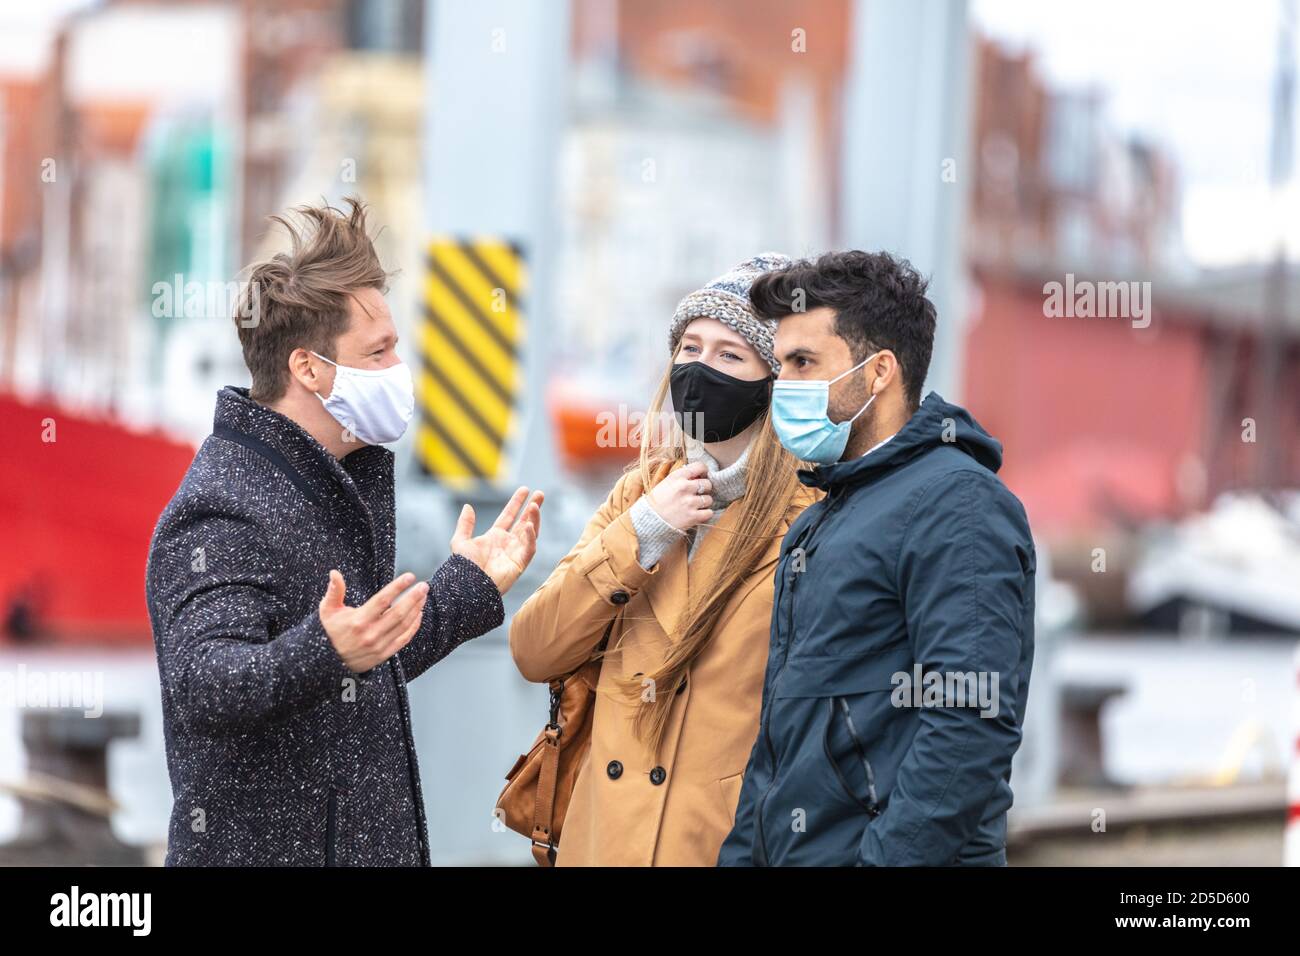 Zwei Männer und eine Frau in Corona-Zeit, mit alltäglichen Masken, in der kalten Jahreszeit in der Stadt unterwegs. Stockfoto